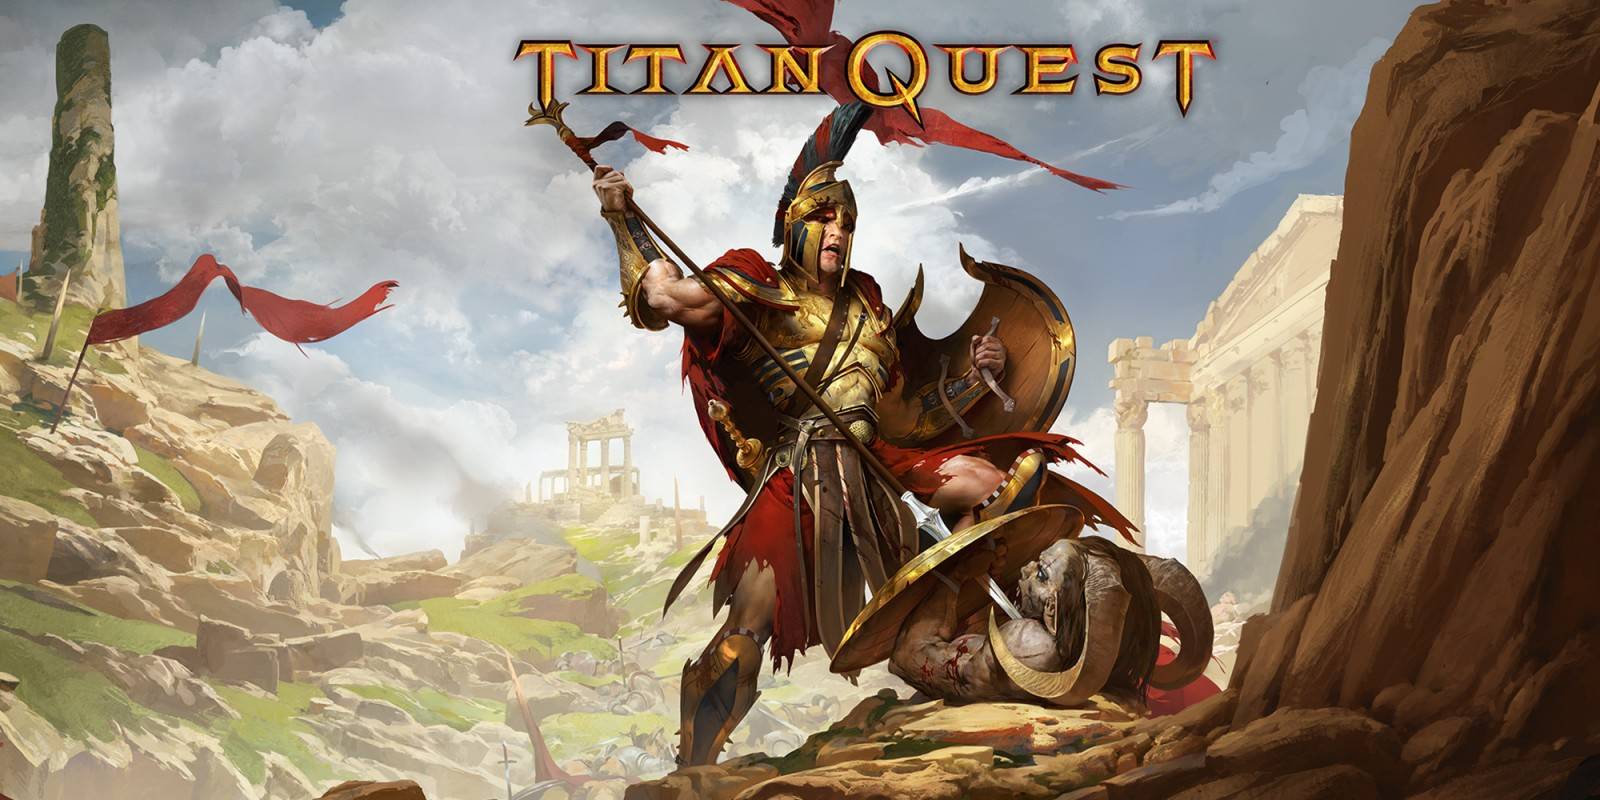 La version de móviles de Titan Quest se actualiza para darnos soporte a controles de consola de manera nativa.